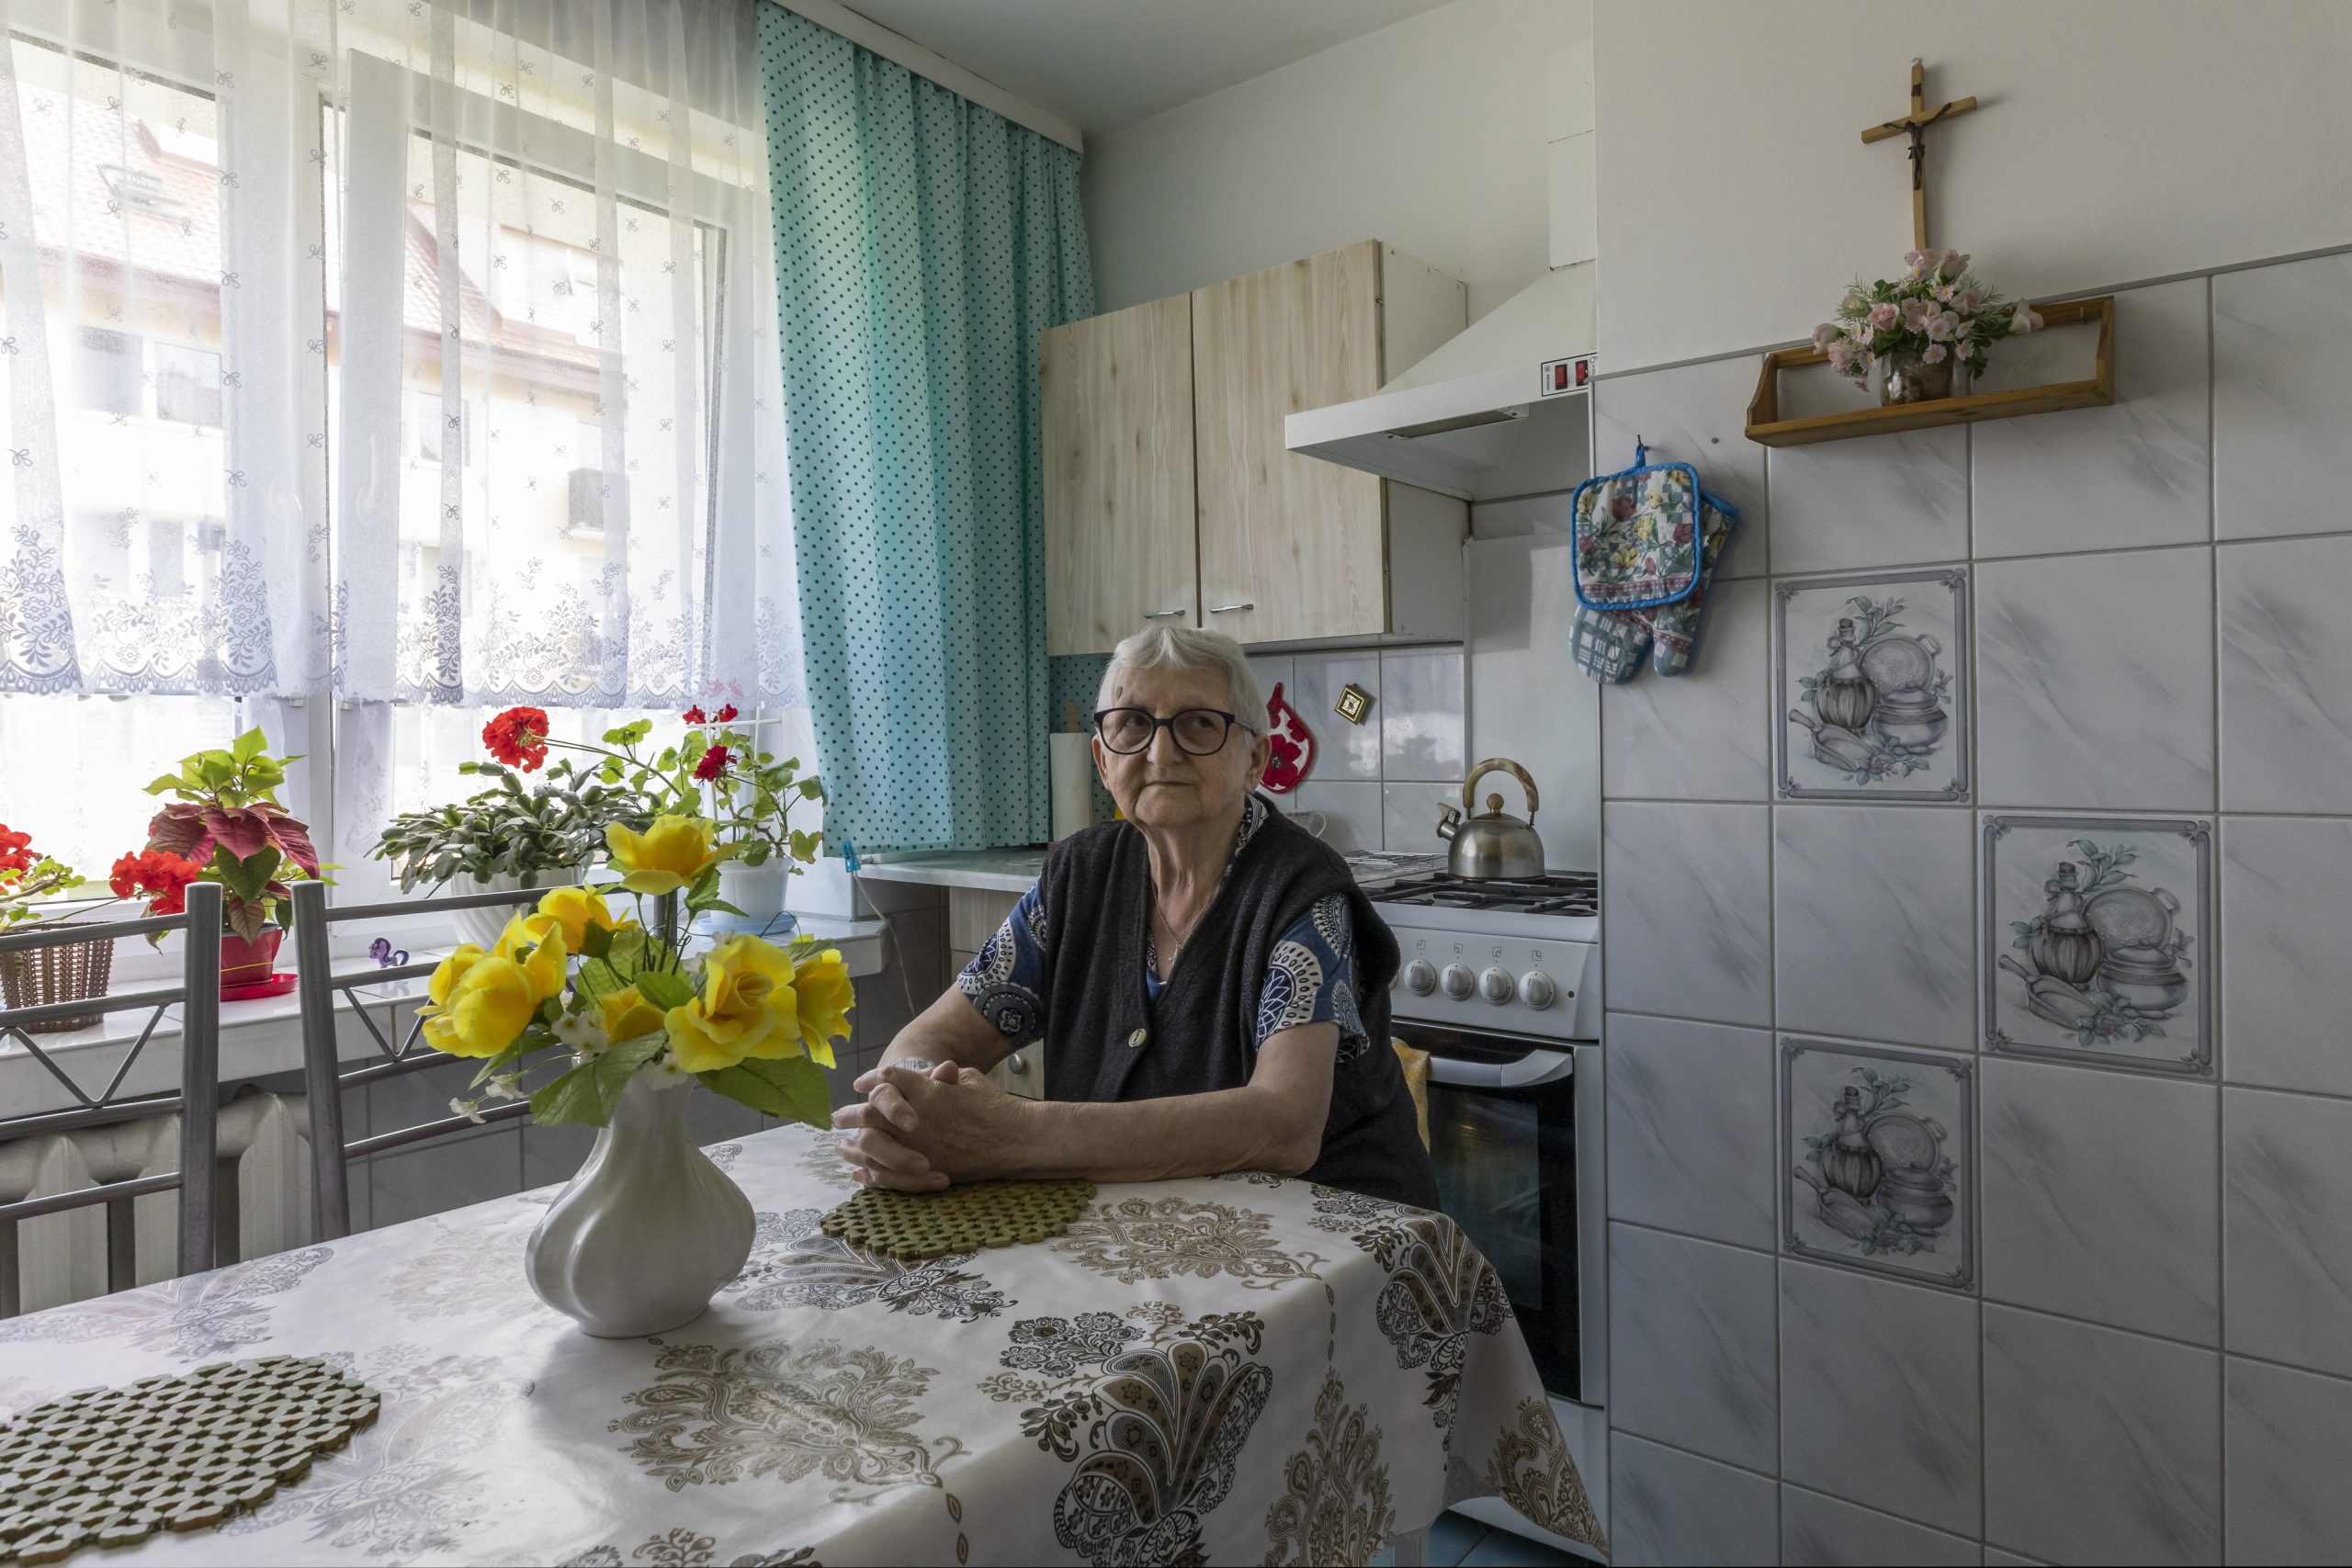 Ceglowo, Polonia - Ewa Adamowicz (83) nella sua casa, che fa parte delle unità abitative Ceramik di epoca sovietica, rigenerate con pannelli fotovoltaici e sistemi di pompe di calore. ©Bruno Zanzottera/Parallelozero